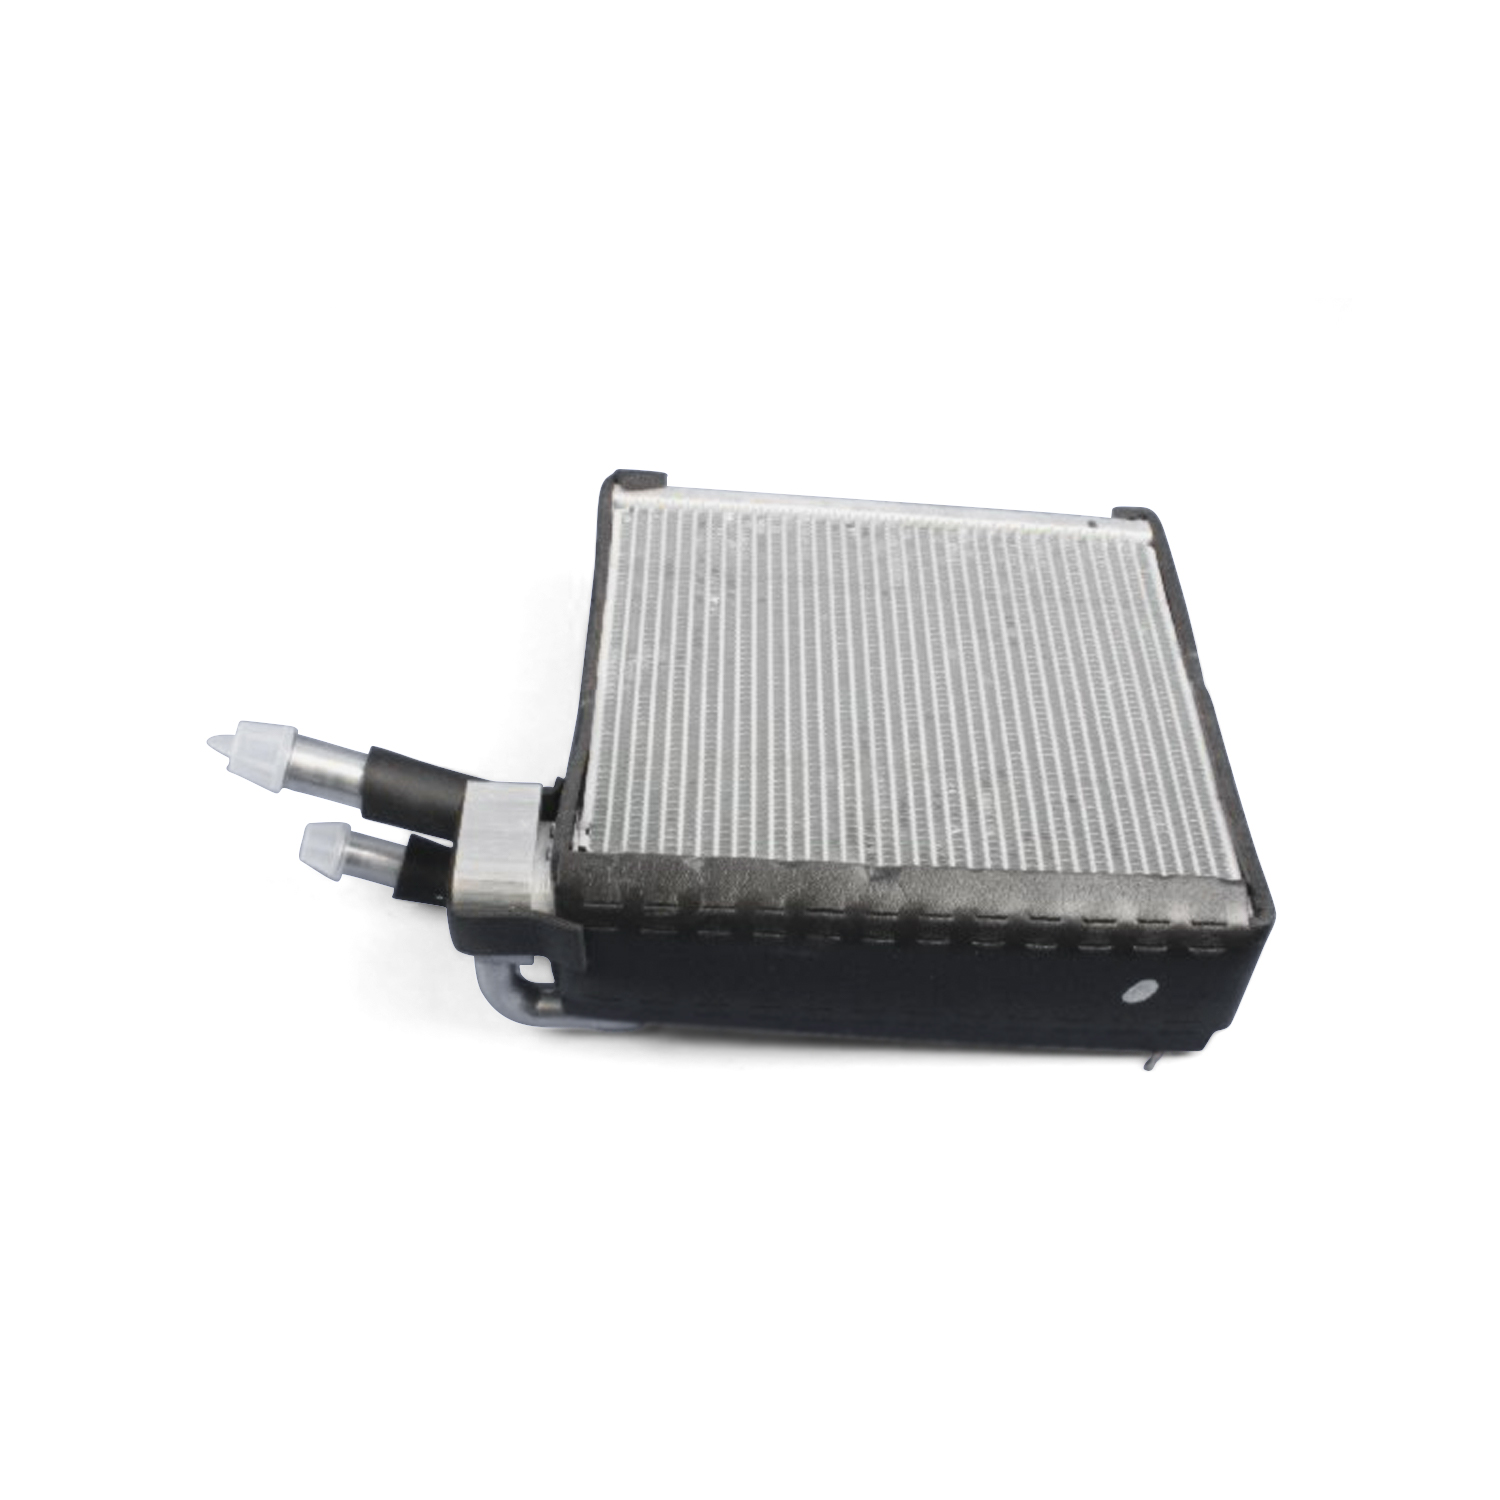 MOPAR PARTS - A/c Evaporator Core Kit - MOP 68004242AA